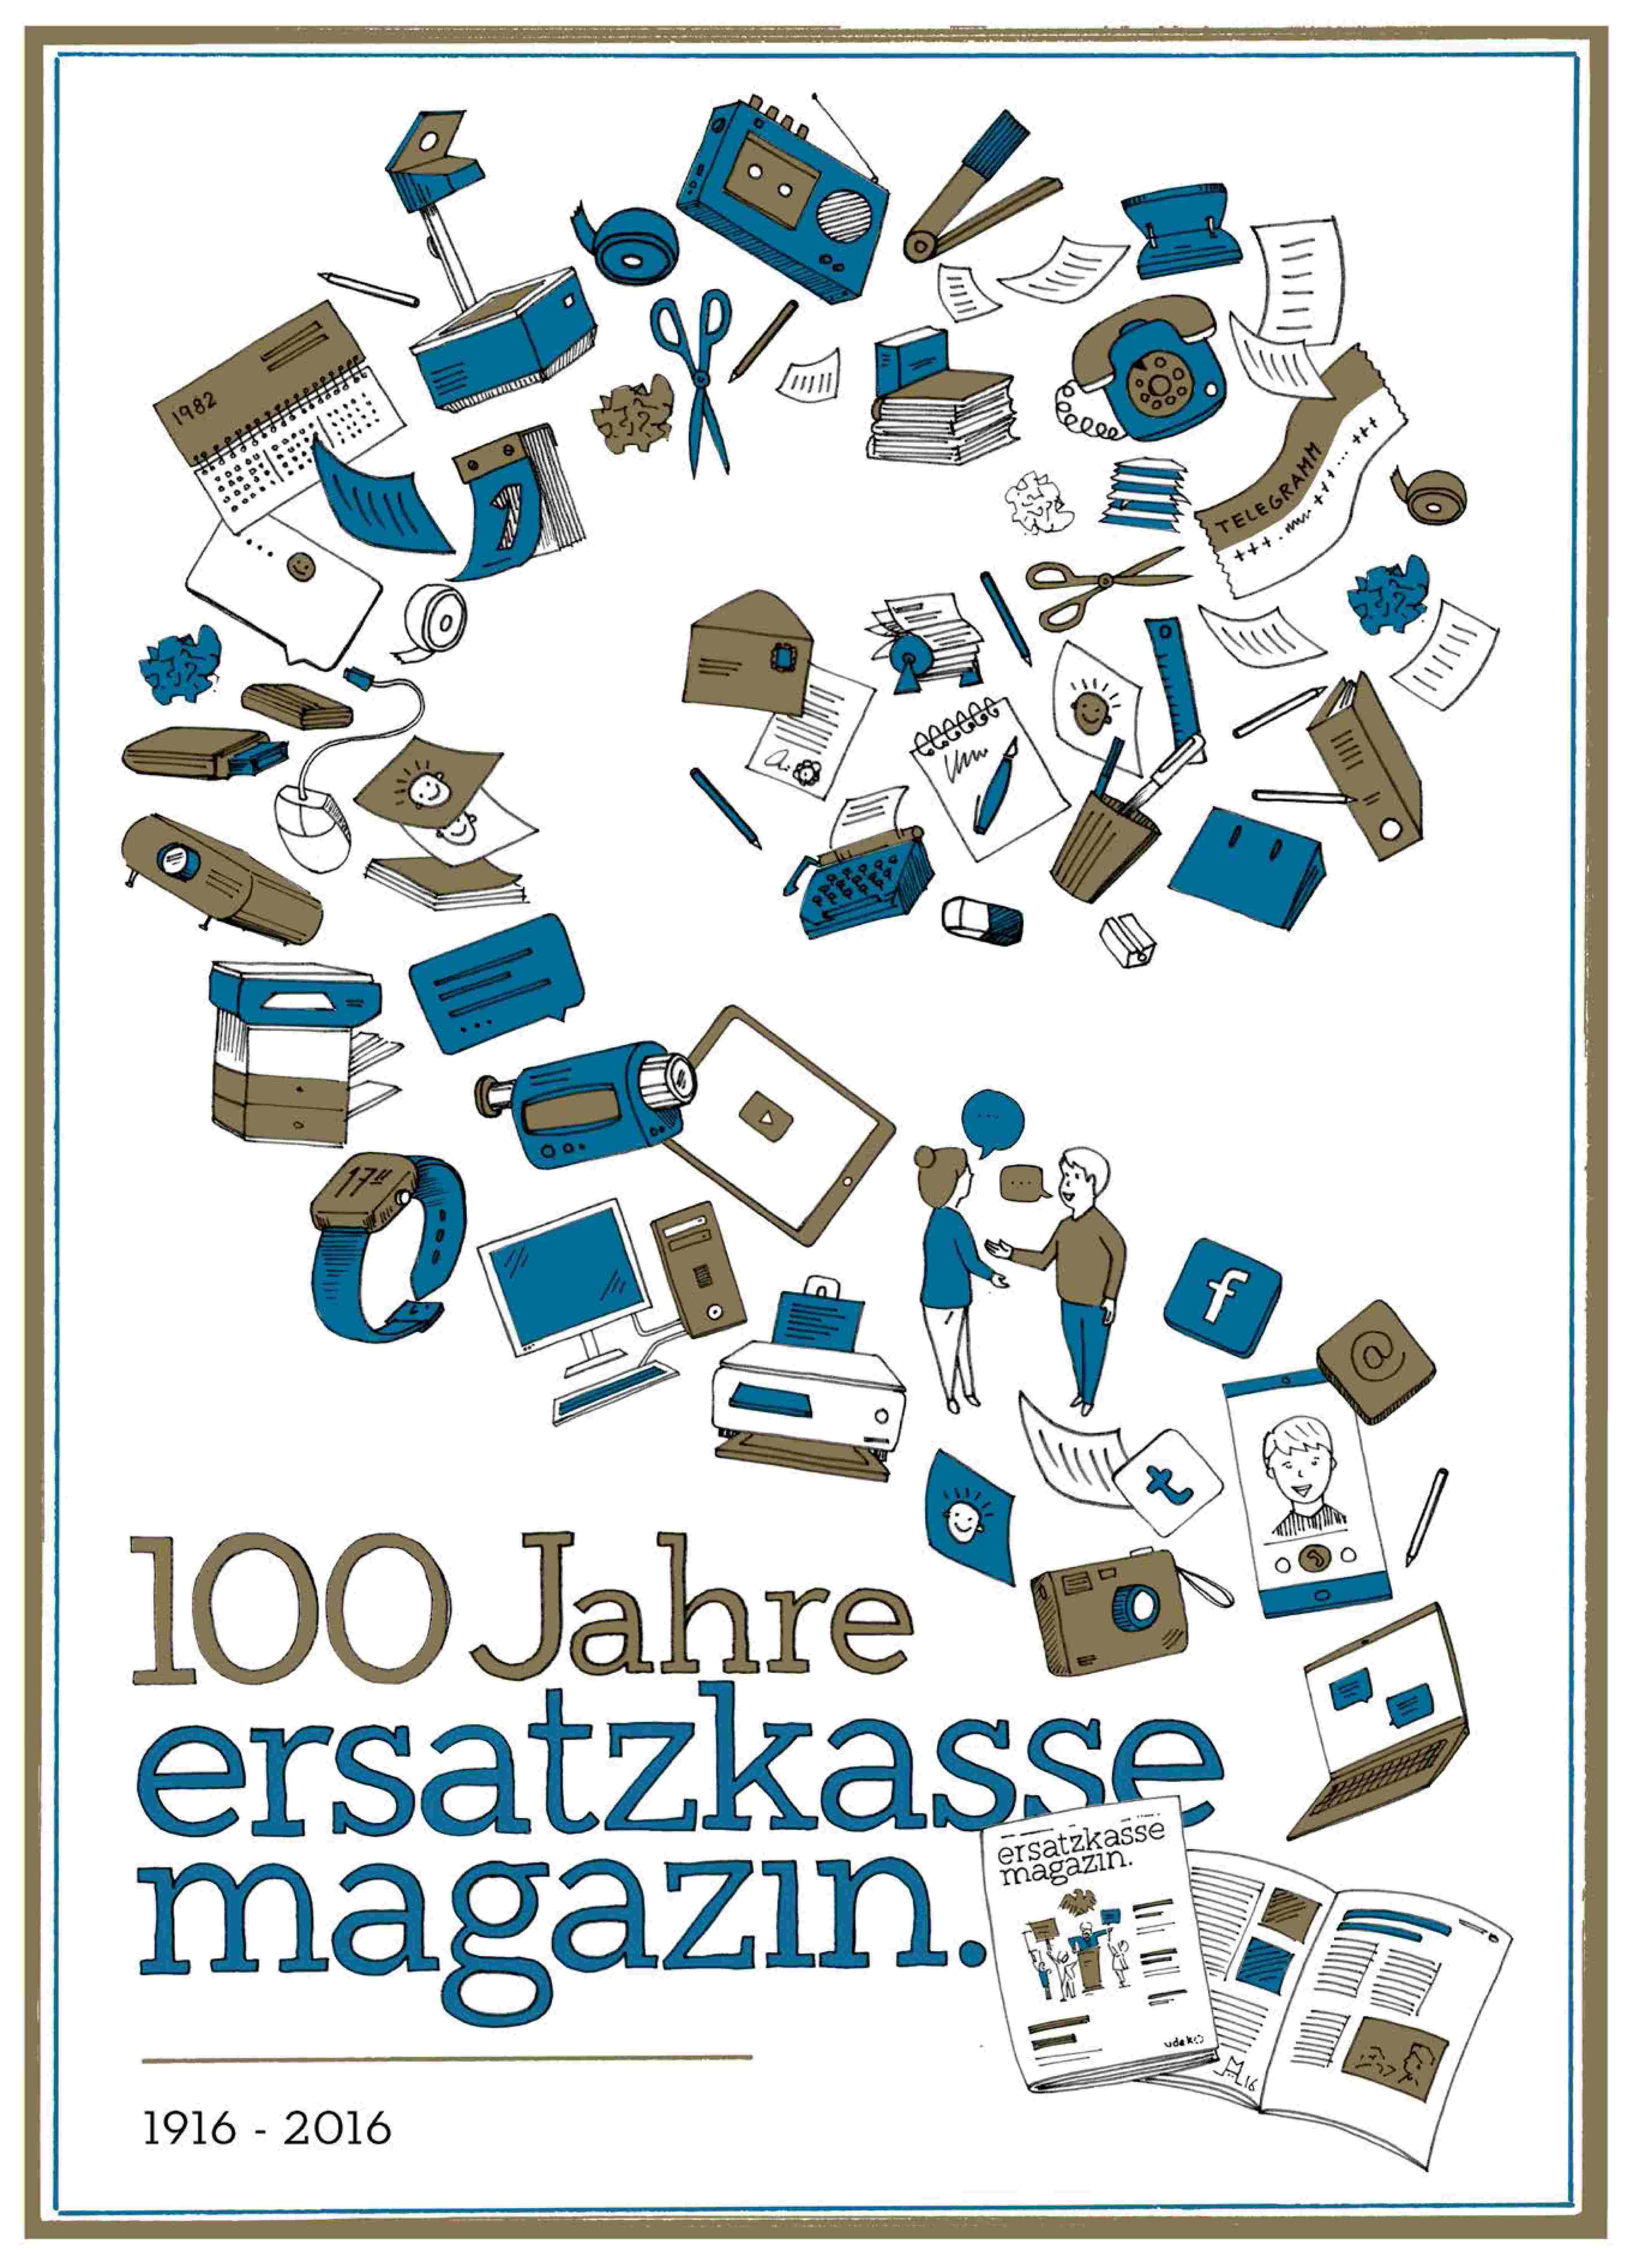 Illustration mit verschiedenen herumfliegenden Gegenständen und der Aufschrift "100 Jahre ersatzkasse magazin."